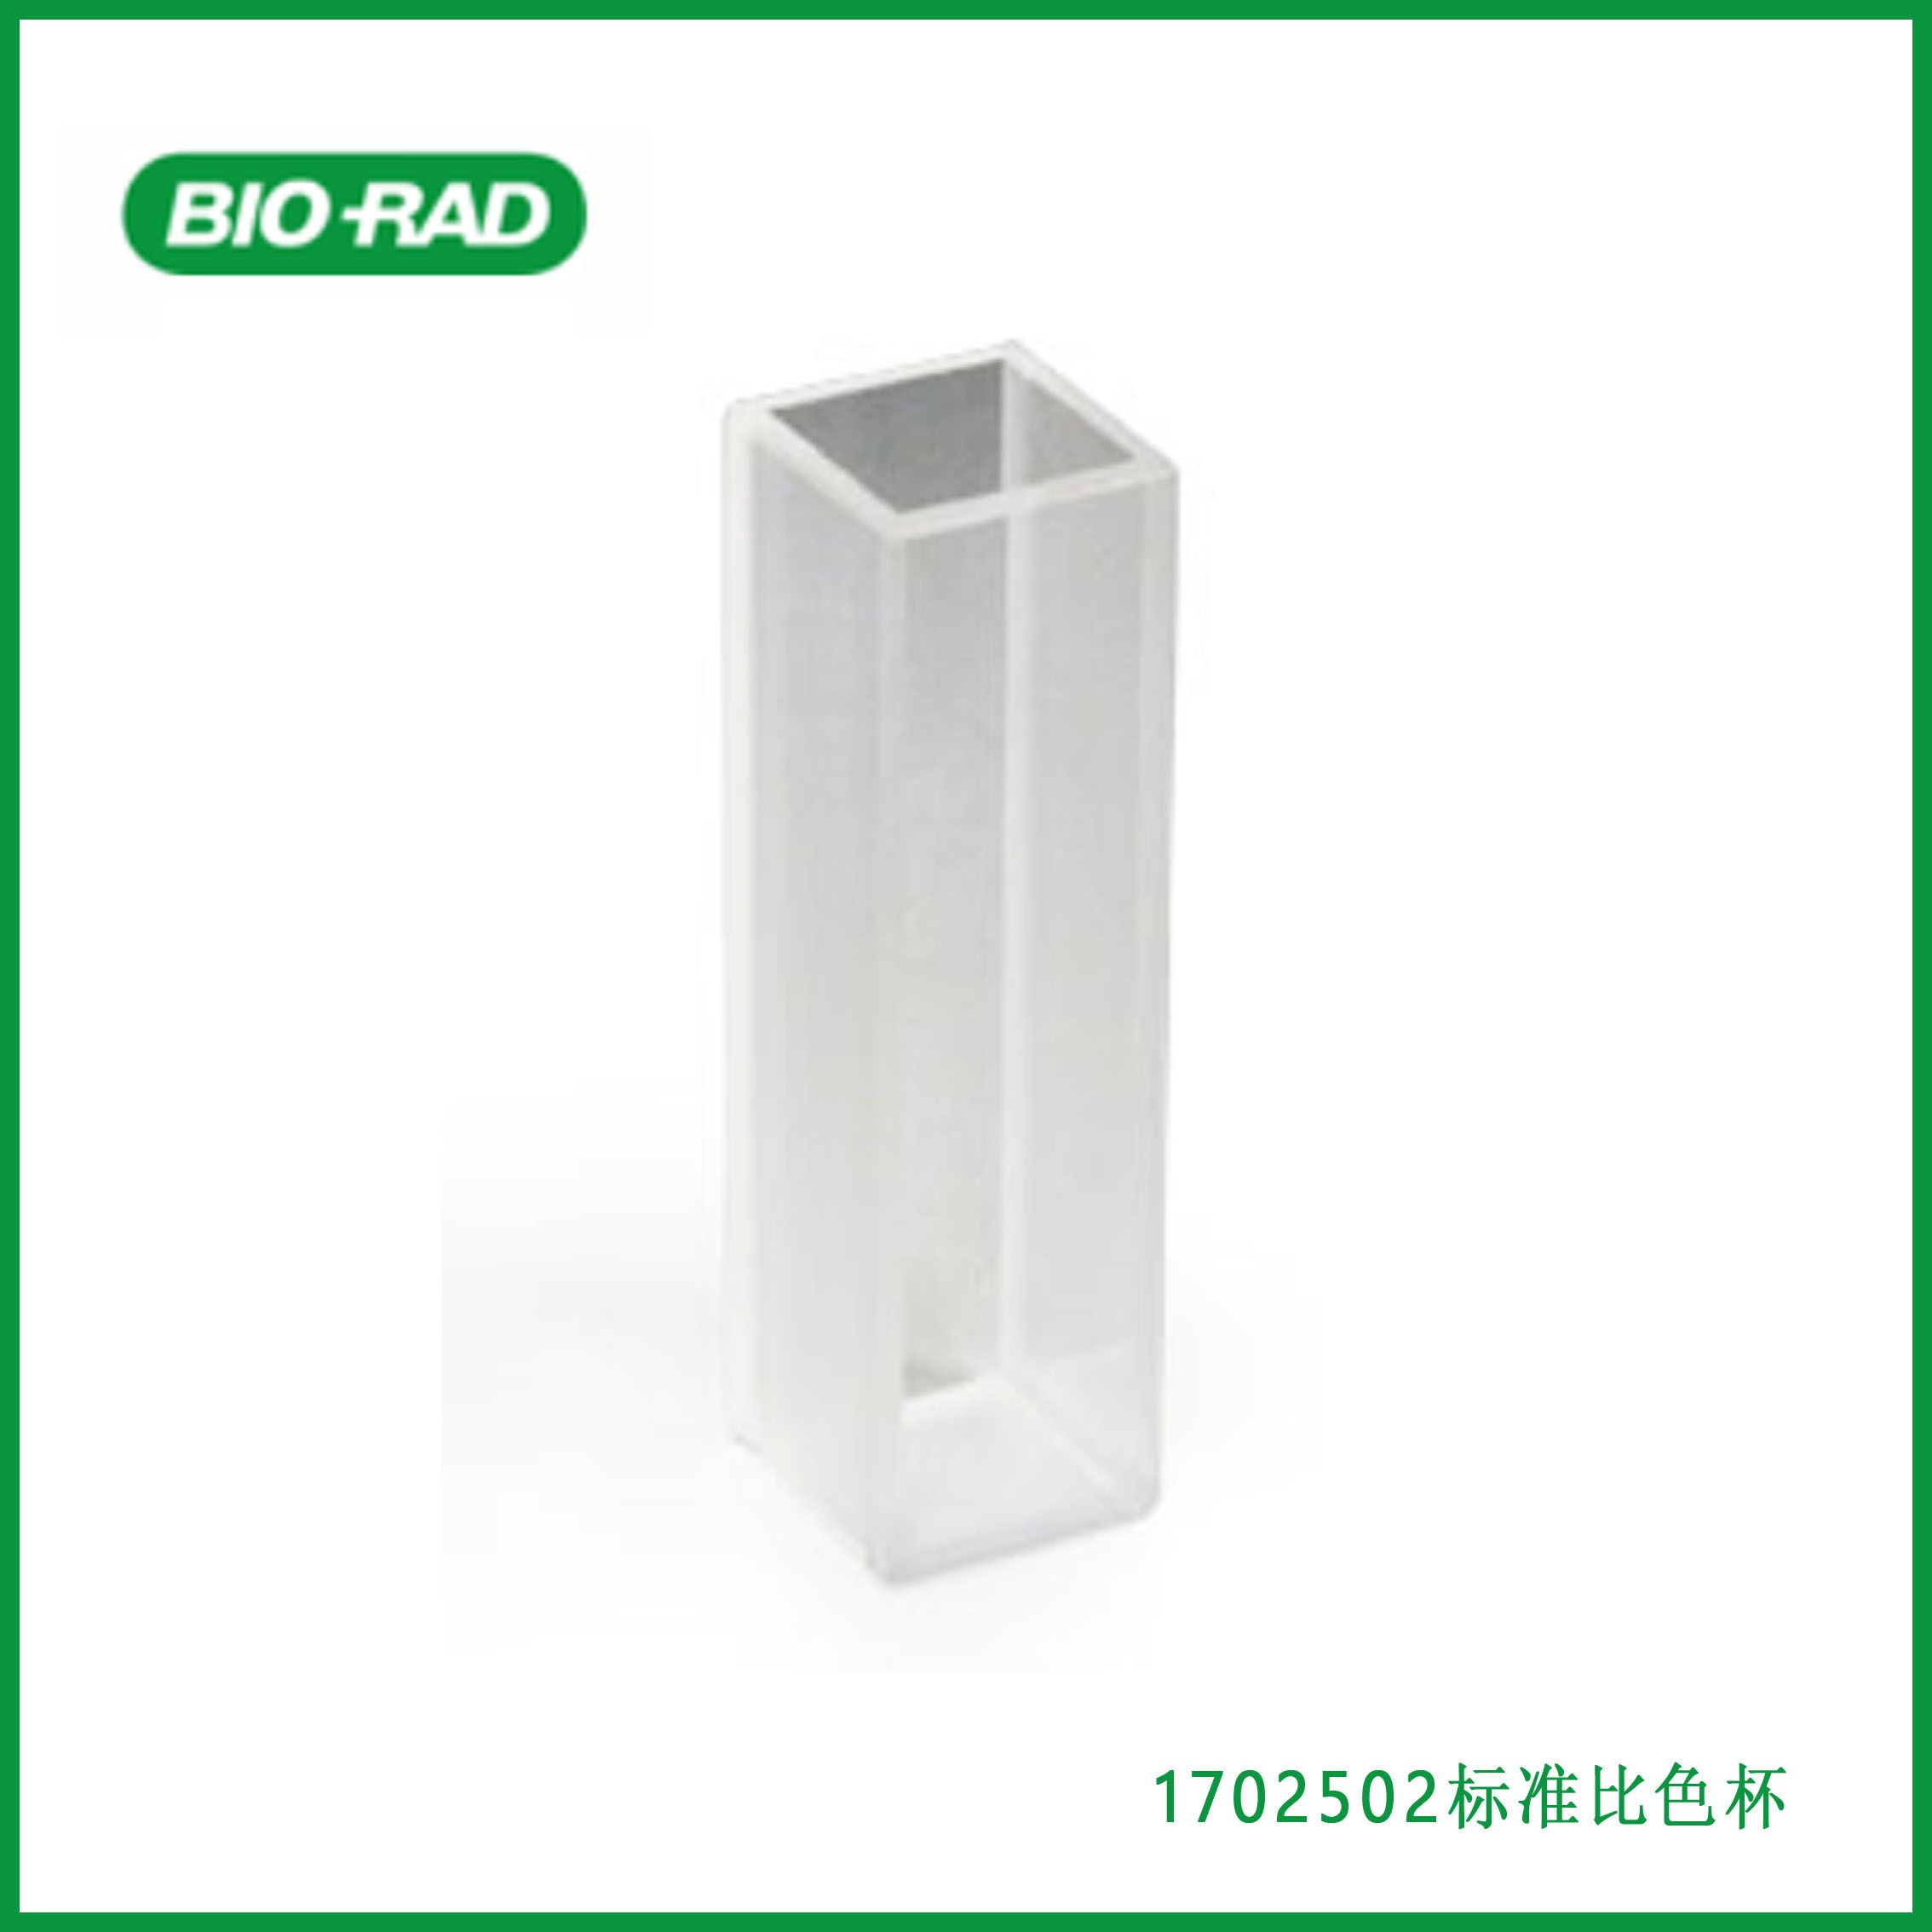 伯乐Bio-rad 1702502 tandard Cuvette, 1-3.5 ml, quartz标准比色杯，1-3.5 ml，石英，现货